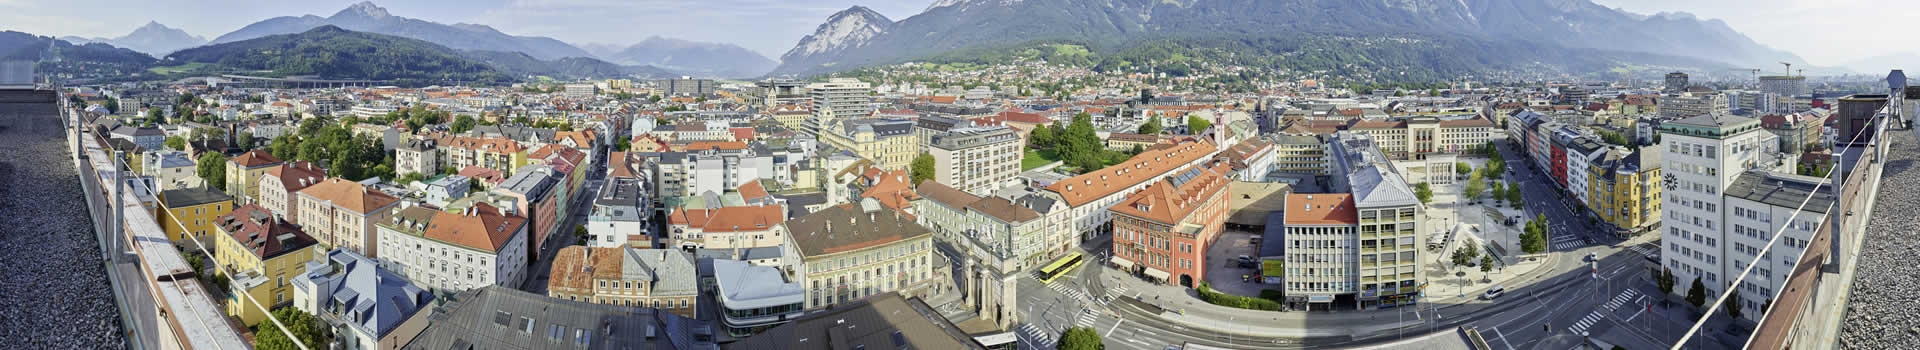 Innsbruck - kranebitten